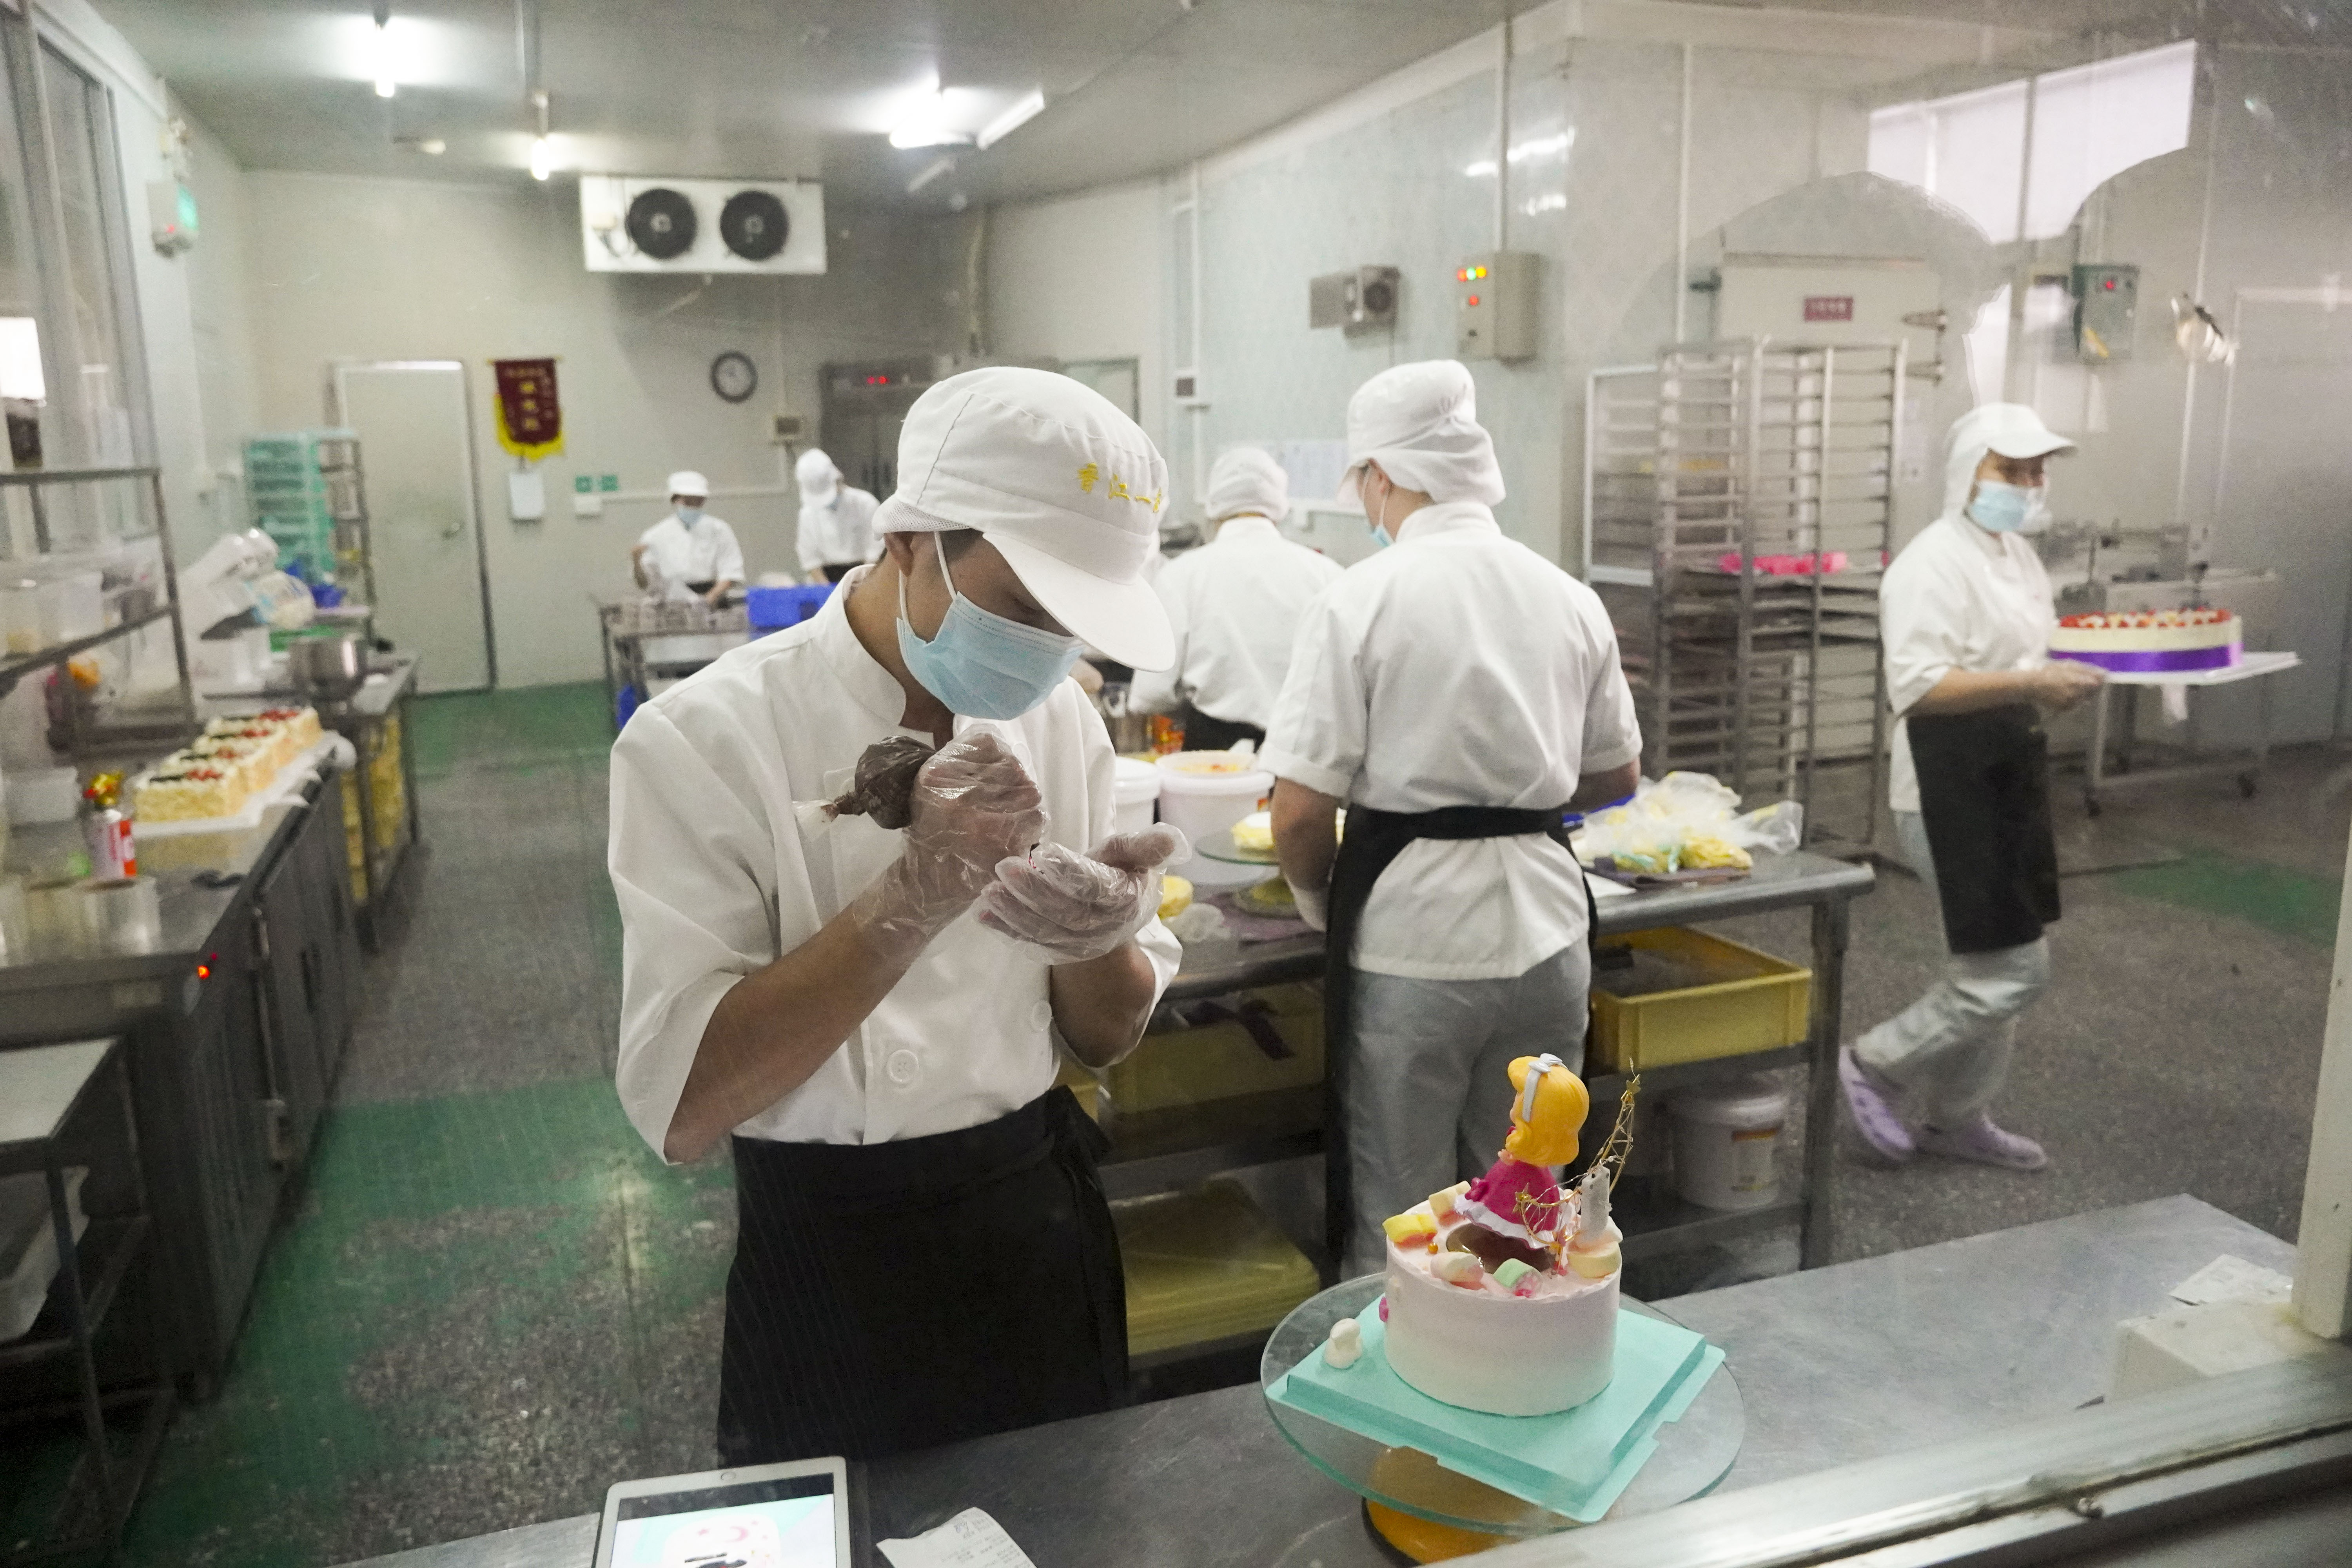 3.香江一本工作人员在制作蛋糕.jpg